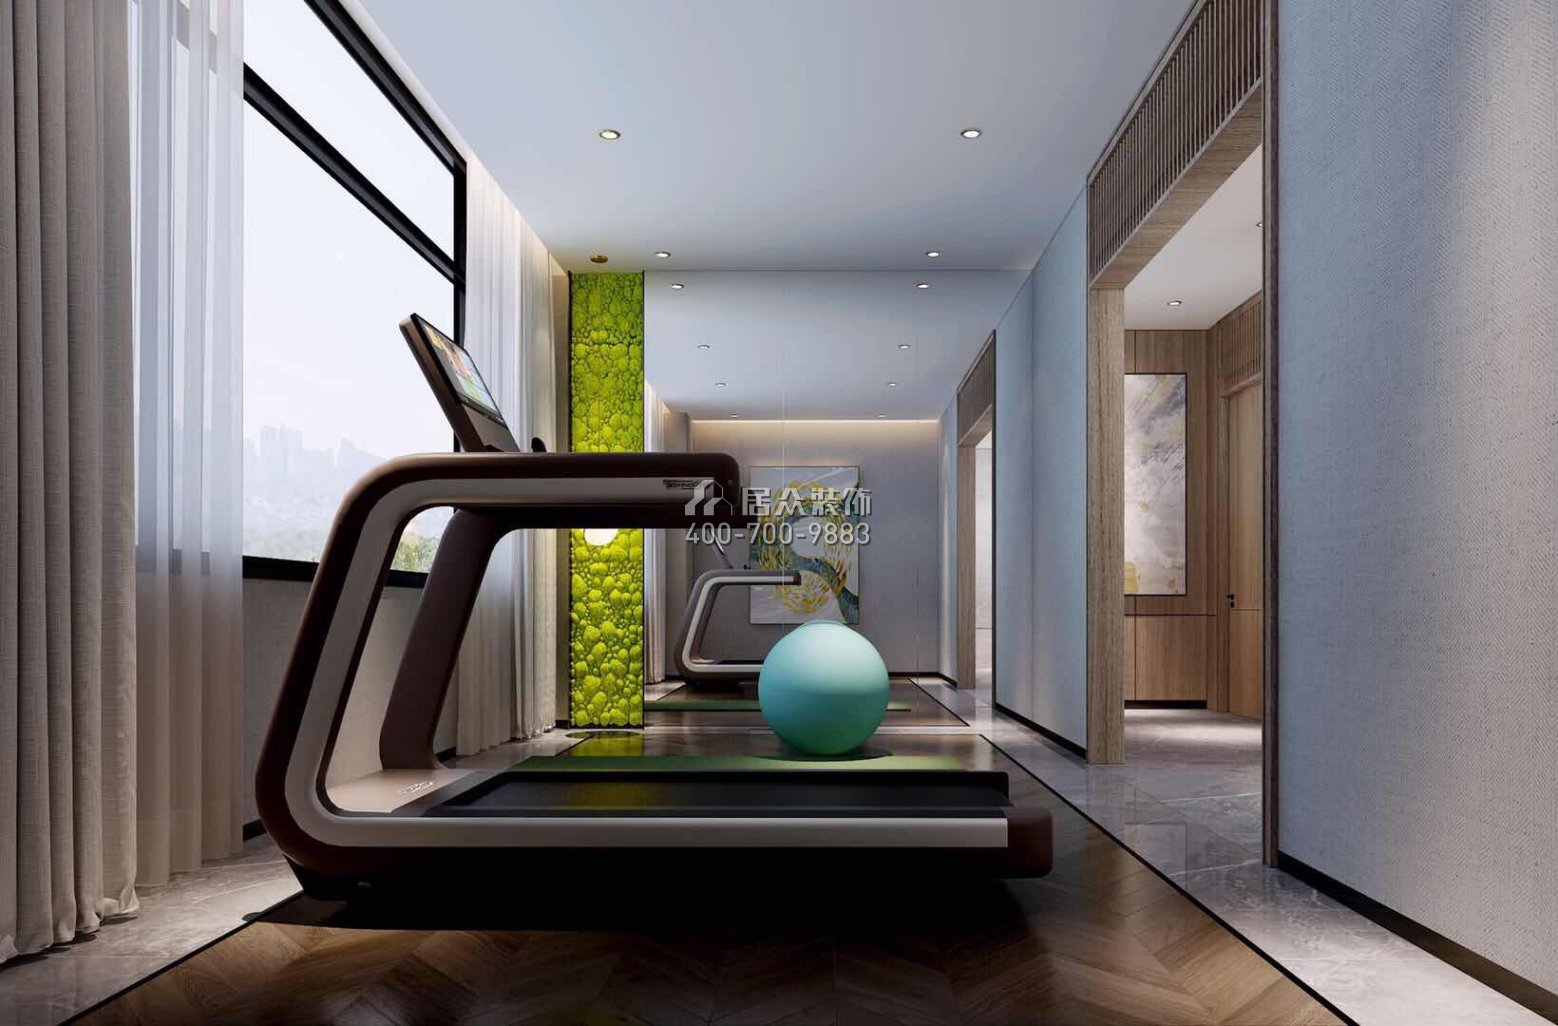 自建房300平方米現代簡約風格平層戶型家庭健身房裝修效果圖